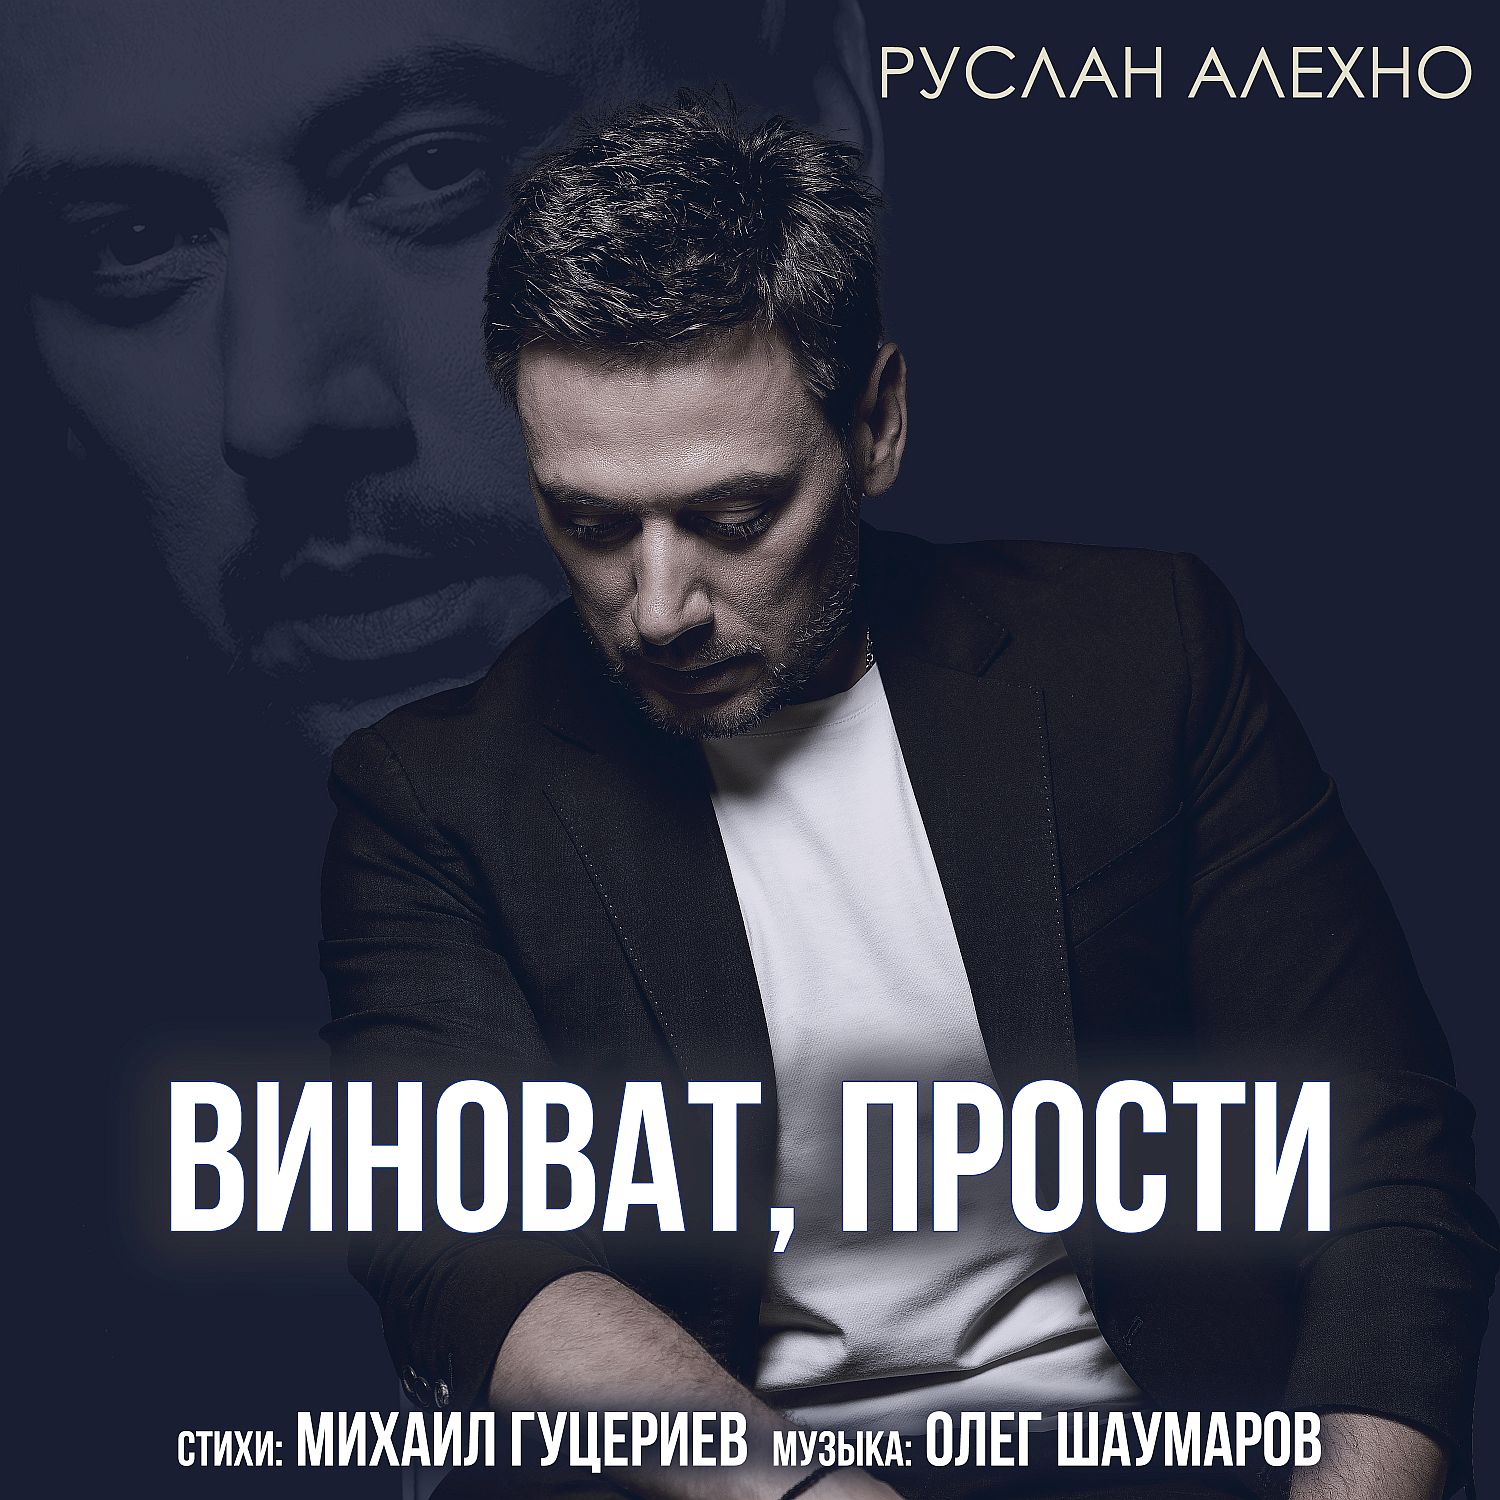 Музыку к композиции написал автор хитов для многих российских звёзд Олег Ша...